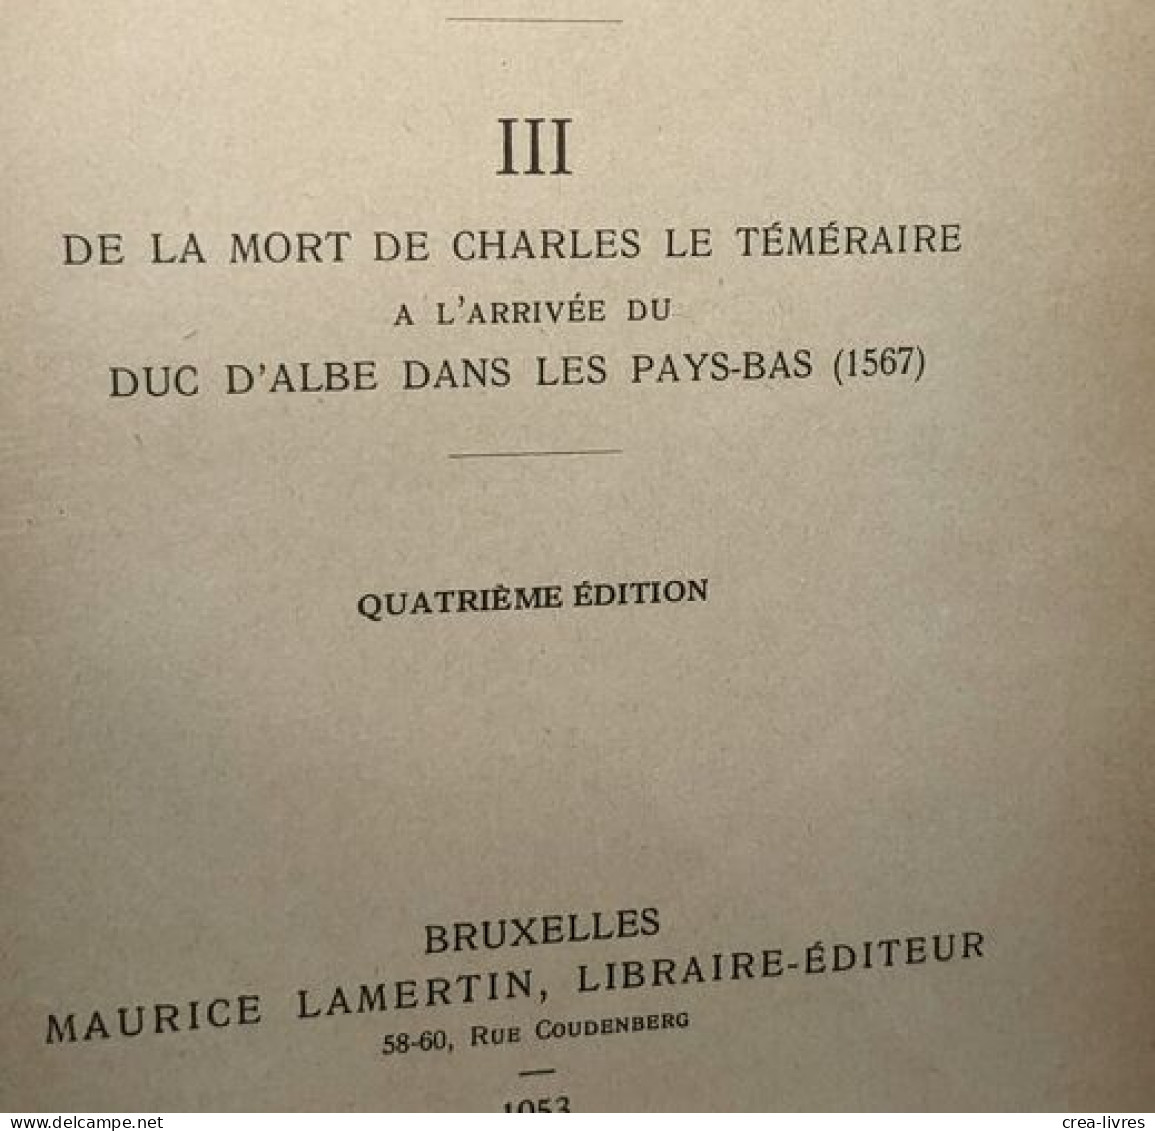 Histoire De La Belgique TOMES 1 (1929) 2 (1947) 3 (1953) 4 (1927) 5 (1921) Et 7 (1948) (tome 6 Manquant) - - Histoire